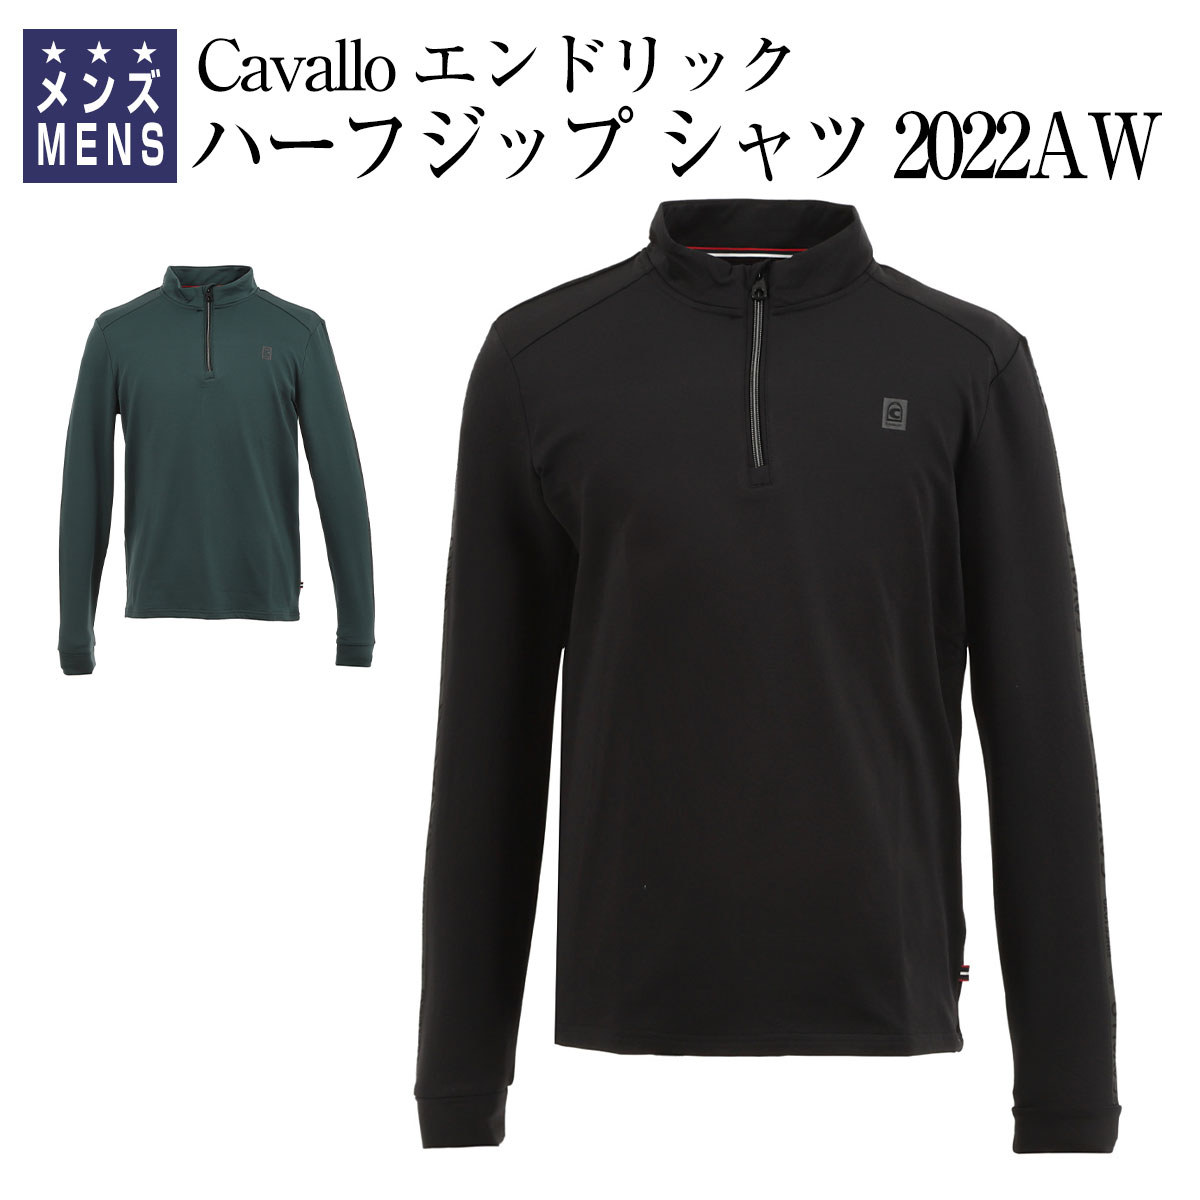 乗馬 機能性シャツ Cavallo エンドリック ハーフジップ シャツ メンズ 乗馬用品 馬具 乗馬用品ジョセス